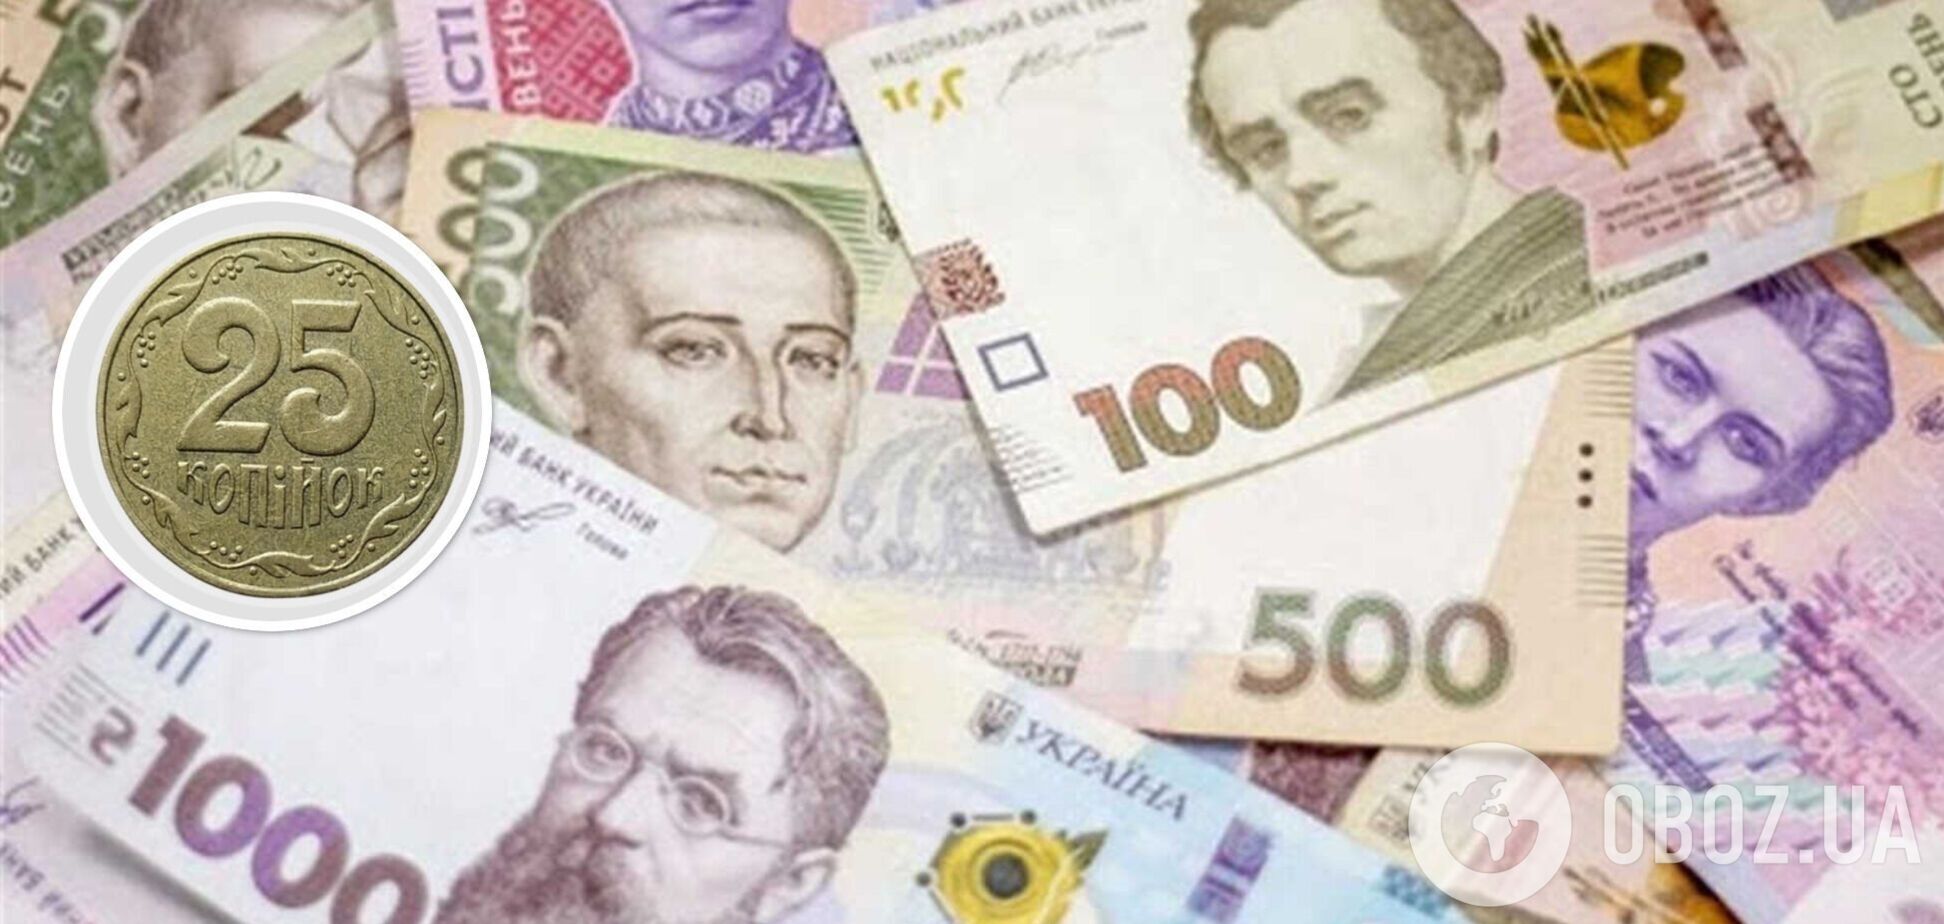 Українці можуть отримати на здачу монети, за які колекціонери готові платити тисячі гривень